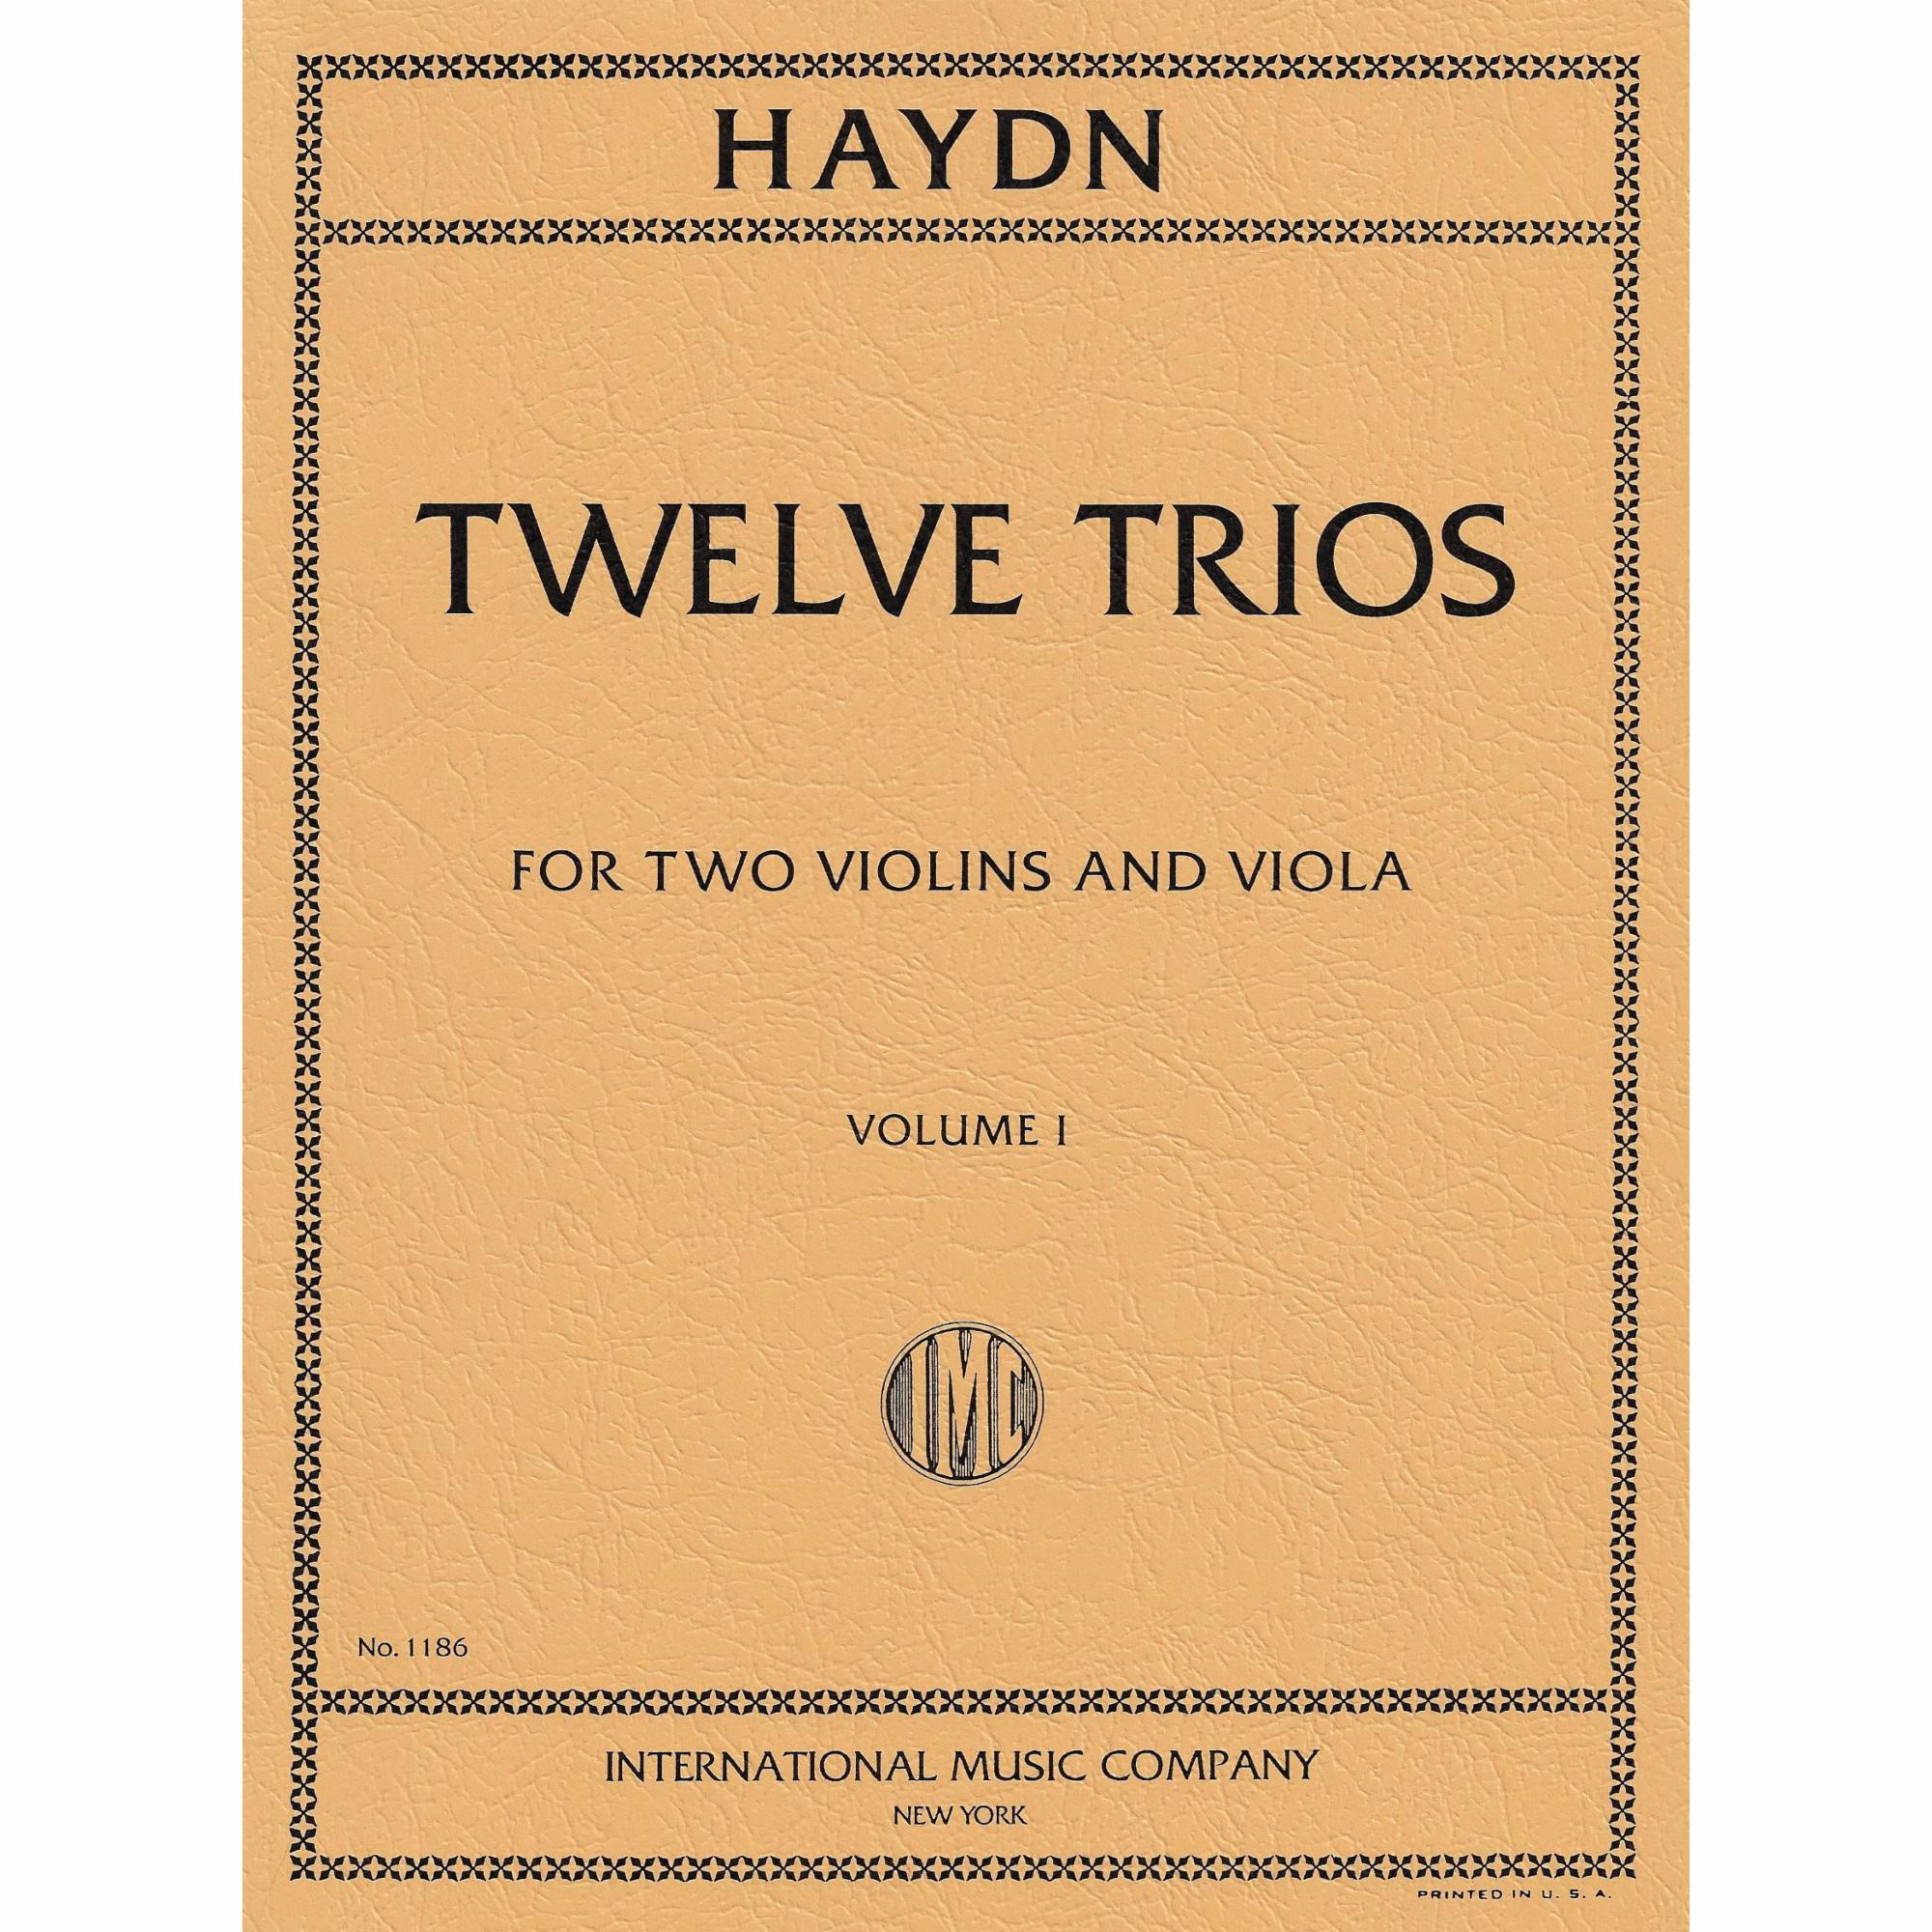 Haydn -- Twelve Trios. Vols. I-II for Two Violins and Viola